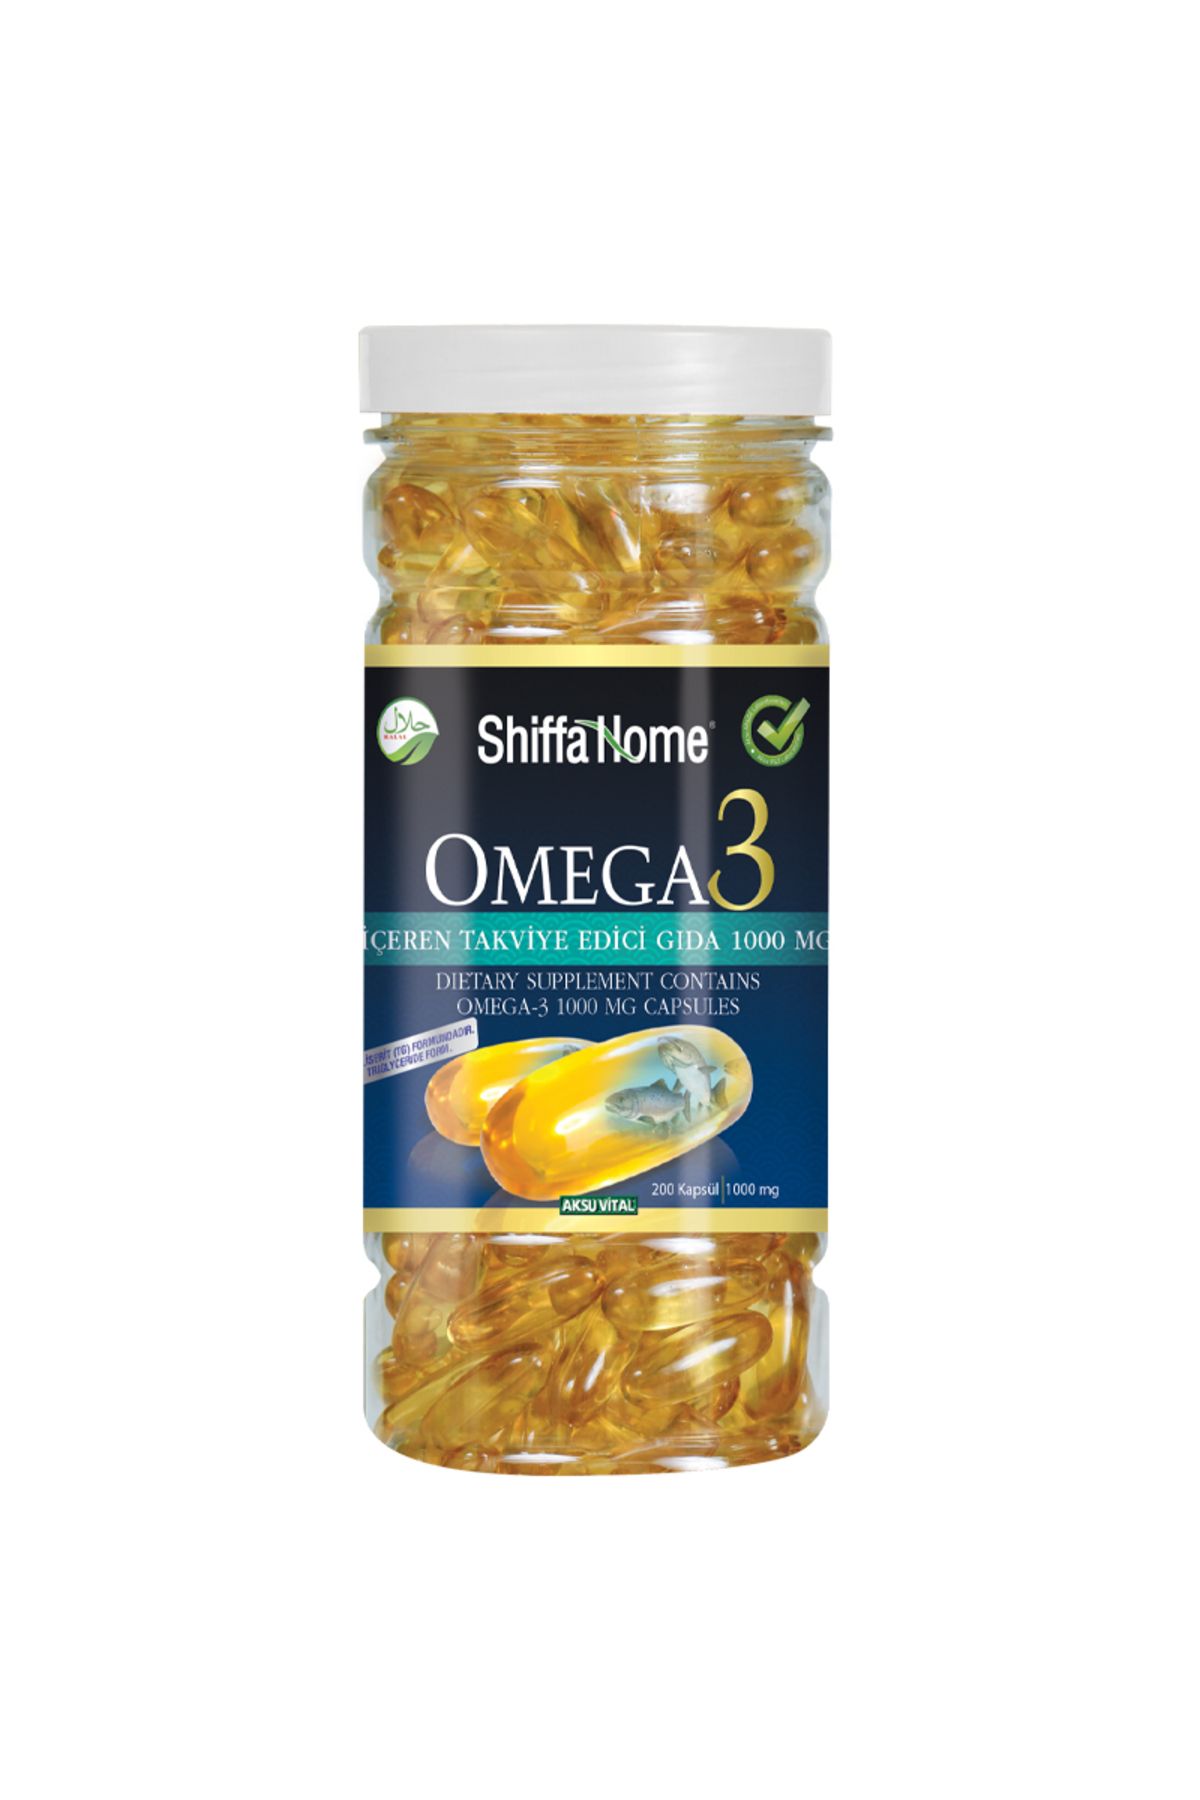 Shiffa Home Omega 3 Takviye Edici Gıda 200 Kapsül 1000mg